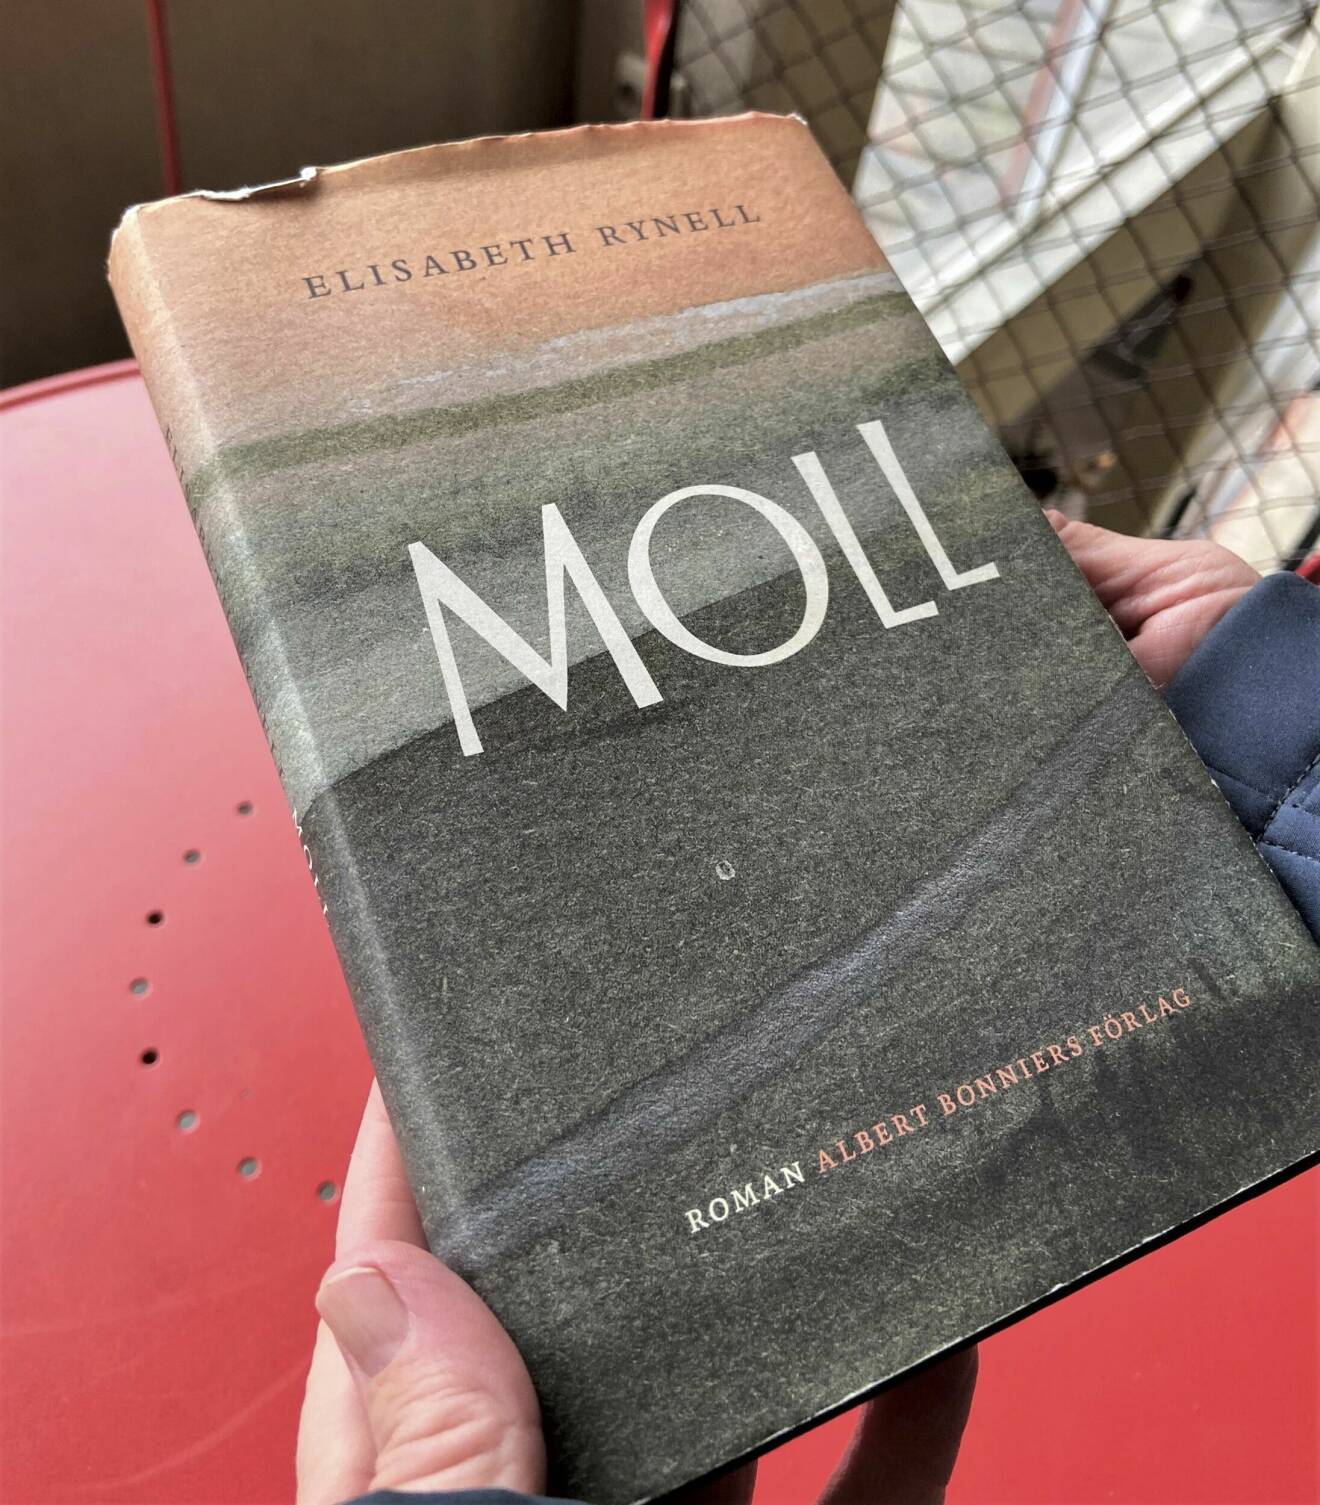 Elisabeth håller fram boken Moll, som är hennes senaste roman.